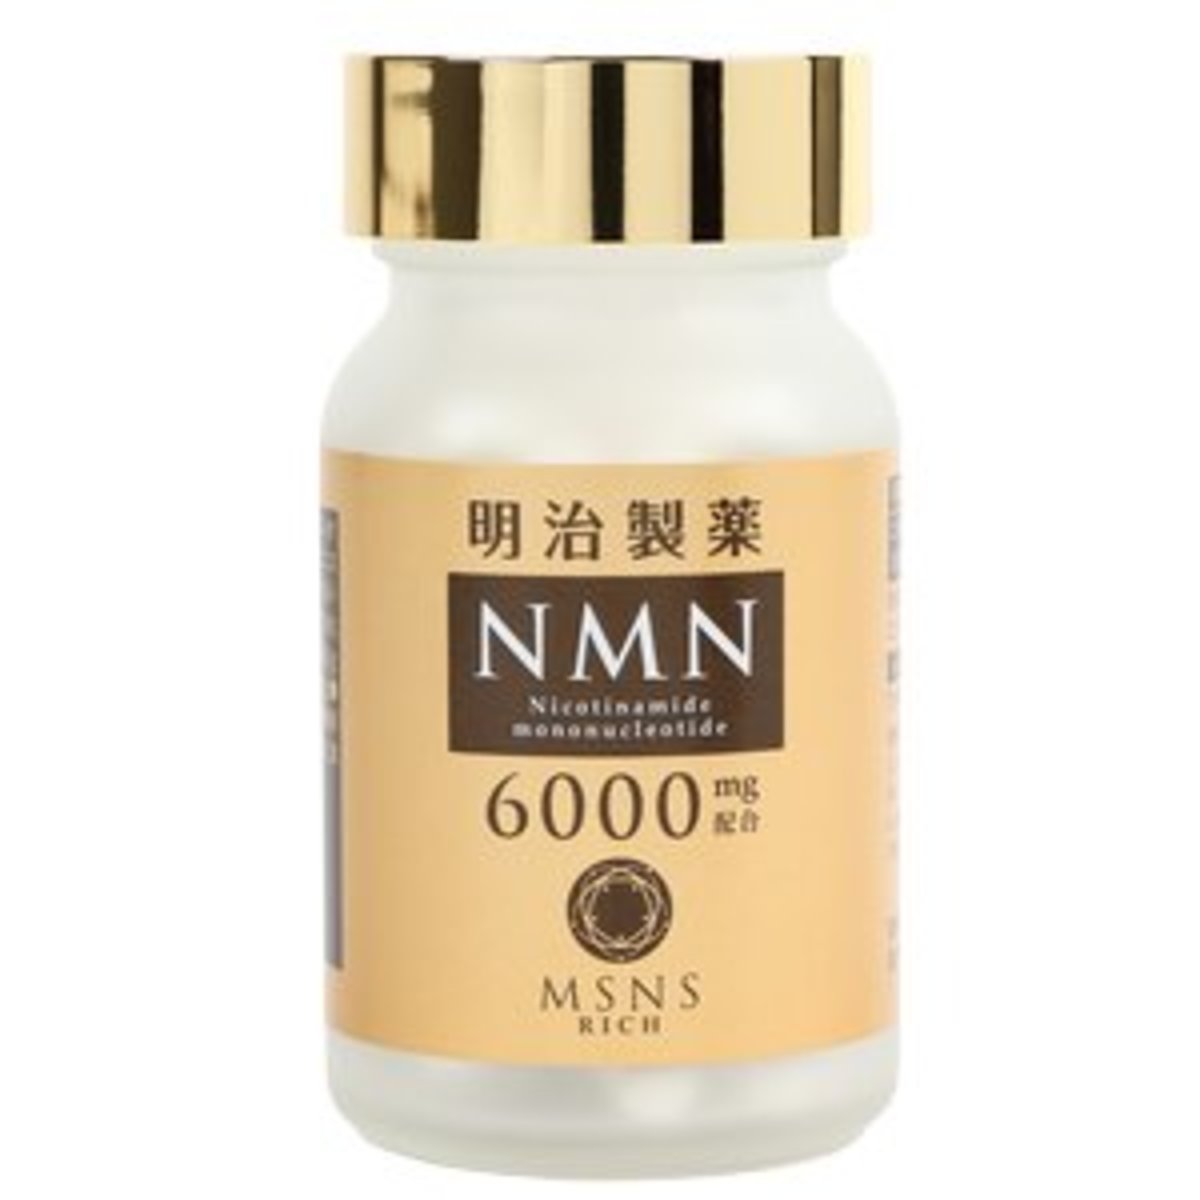 明治製藥| NMN 6000 Rich [日本製造] 細胞修復｜逆轉肌齡｜高純度